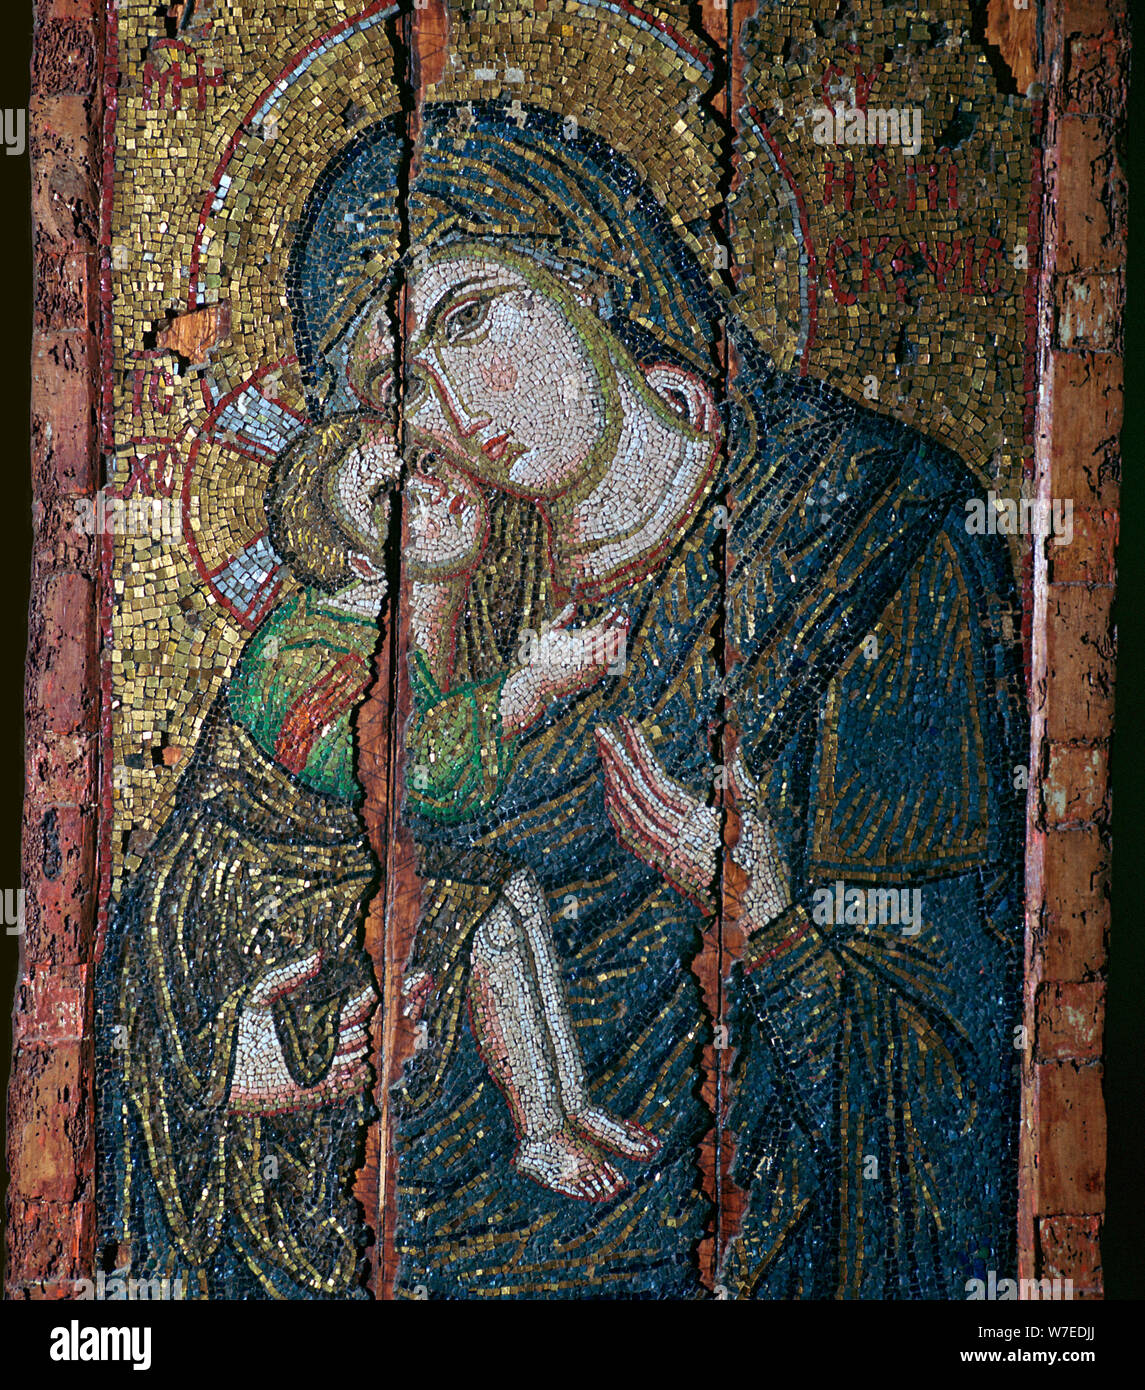 Ikon mosaico della Vergine e il Bambino del XIV secolo. Artista: sconosciuto Foto Stock